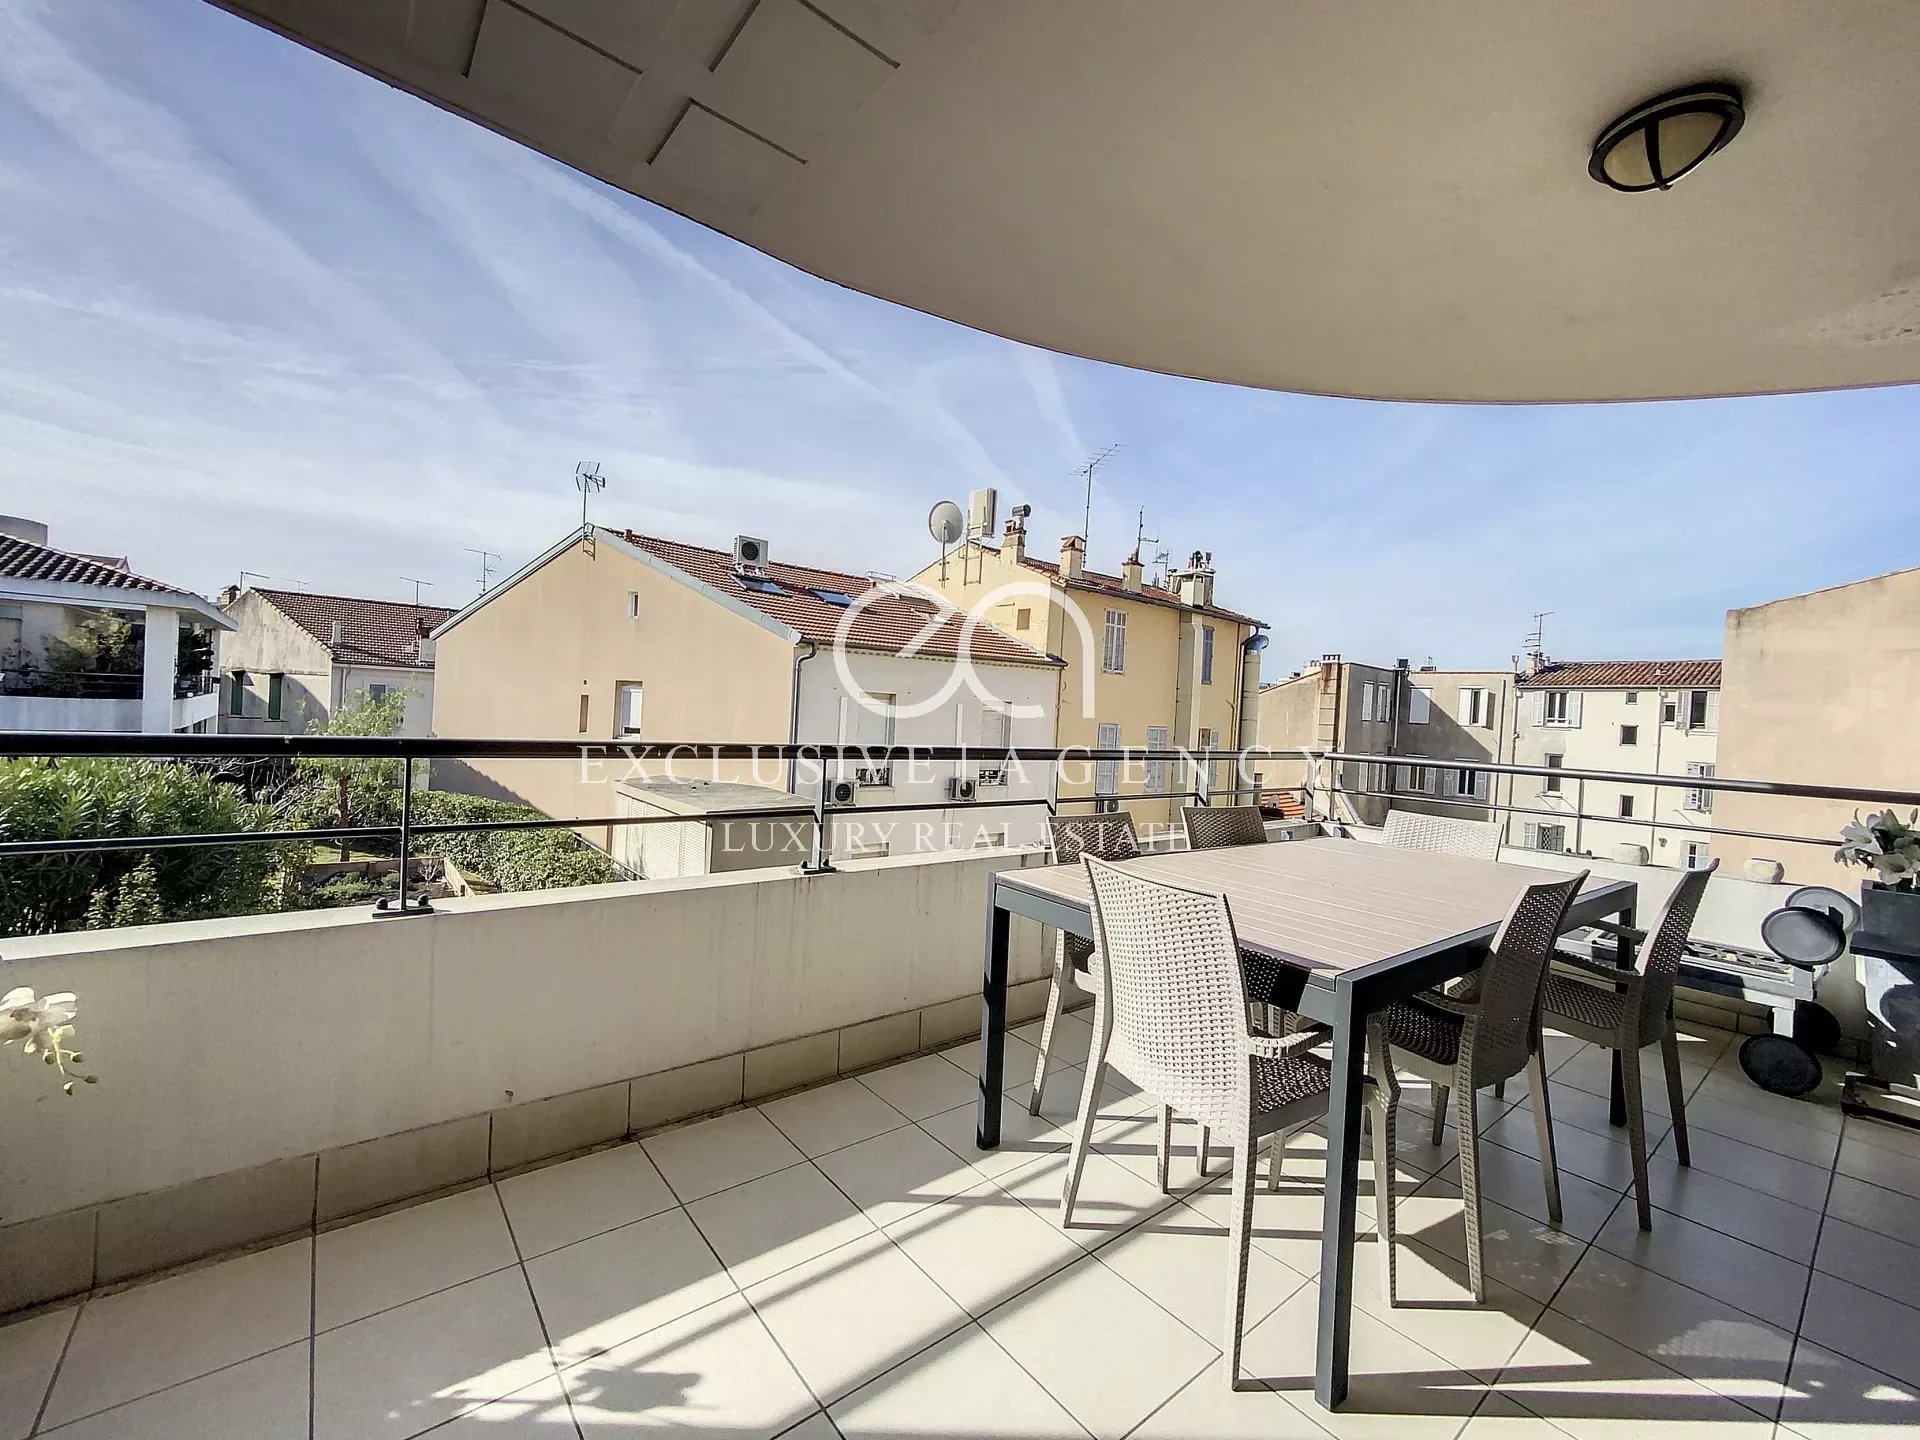 Cannes Croisette location saisonnière 4 pièces 112m² avec terrasse